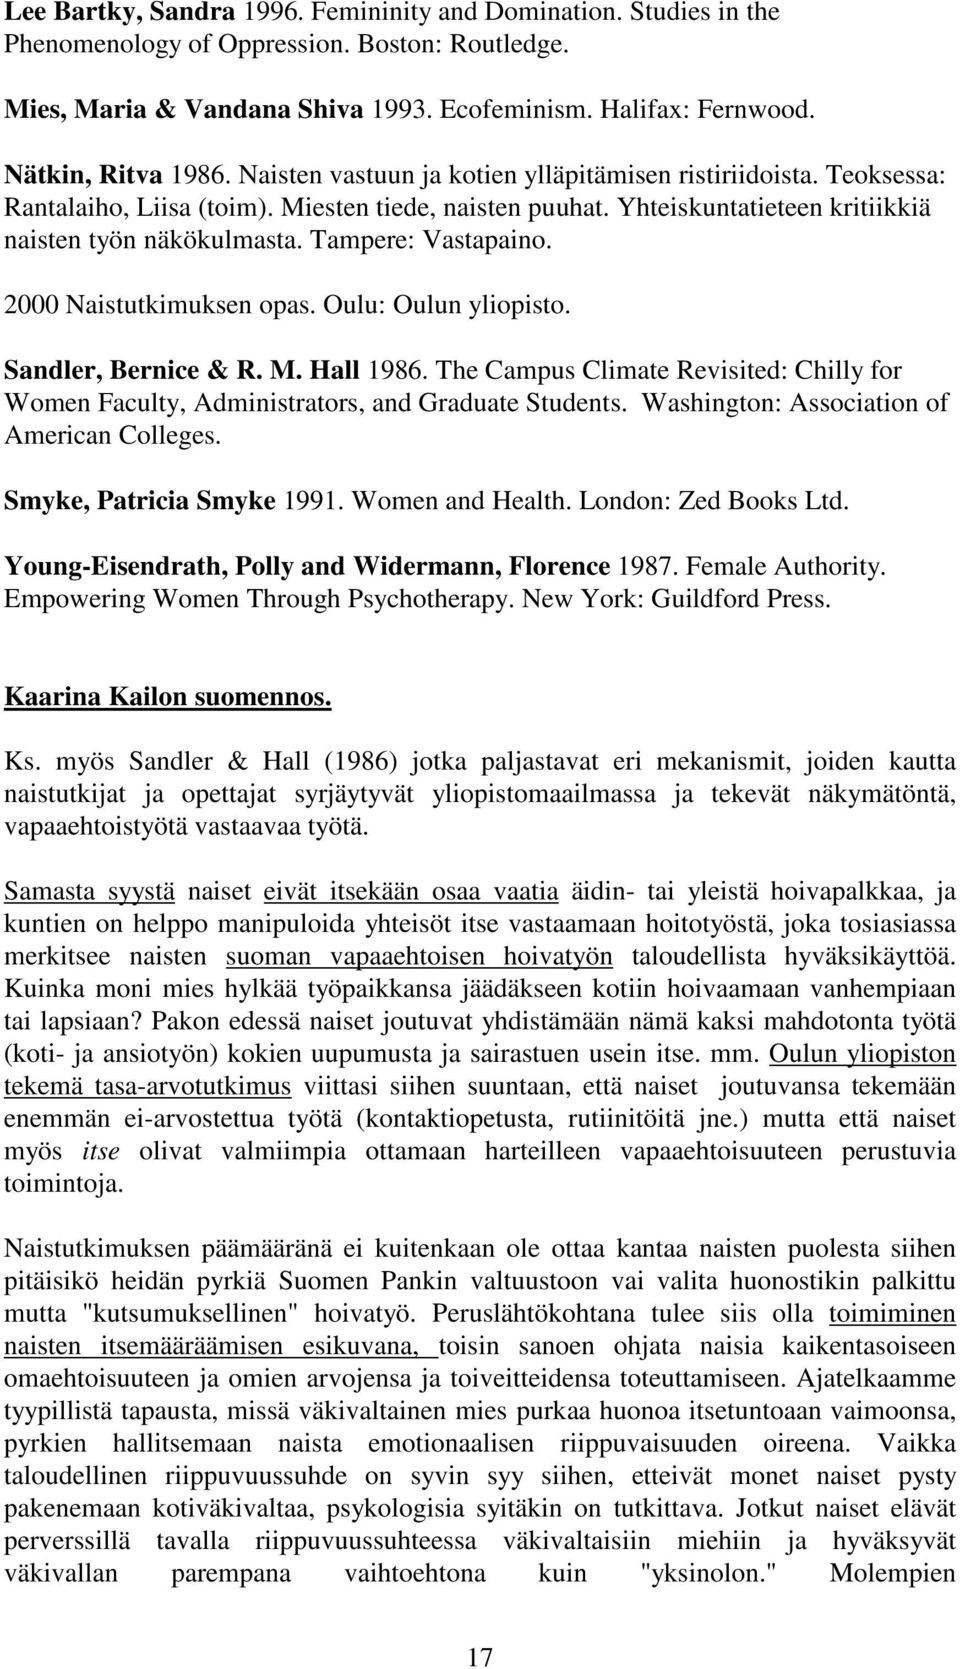 Tampere: Vastapaino. 2000 Naistutkimuksen opas. Oulu: Oulun yliopisto. Sandler, Bernice & R. M. Hall 1986.